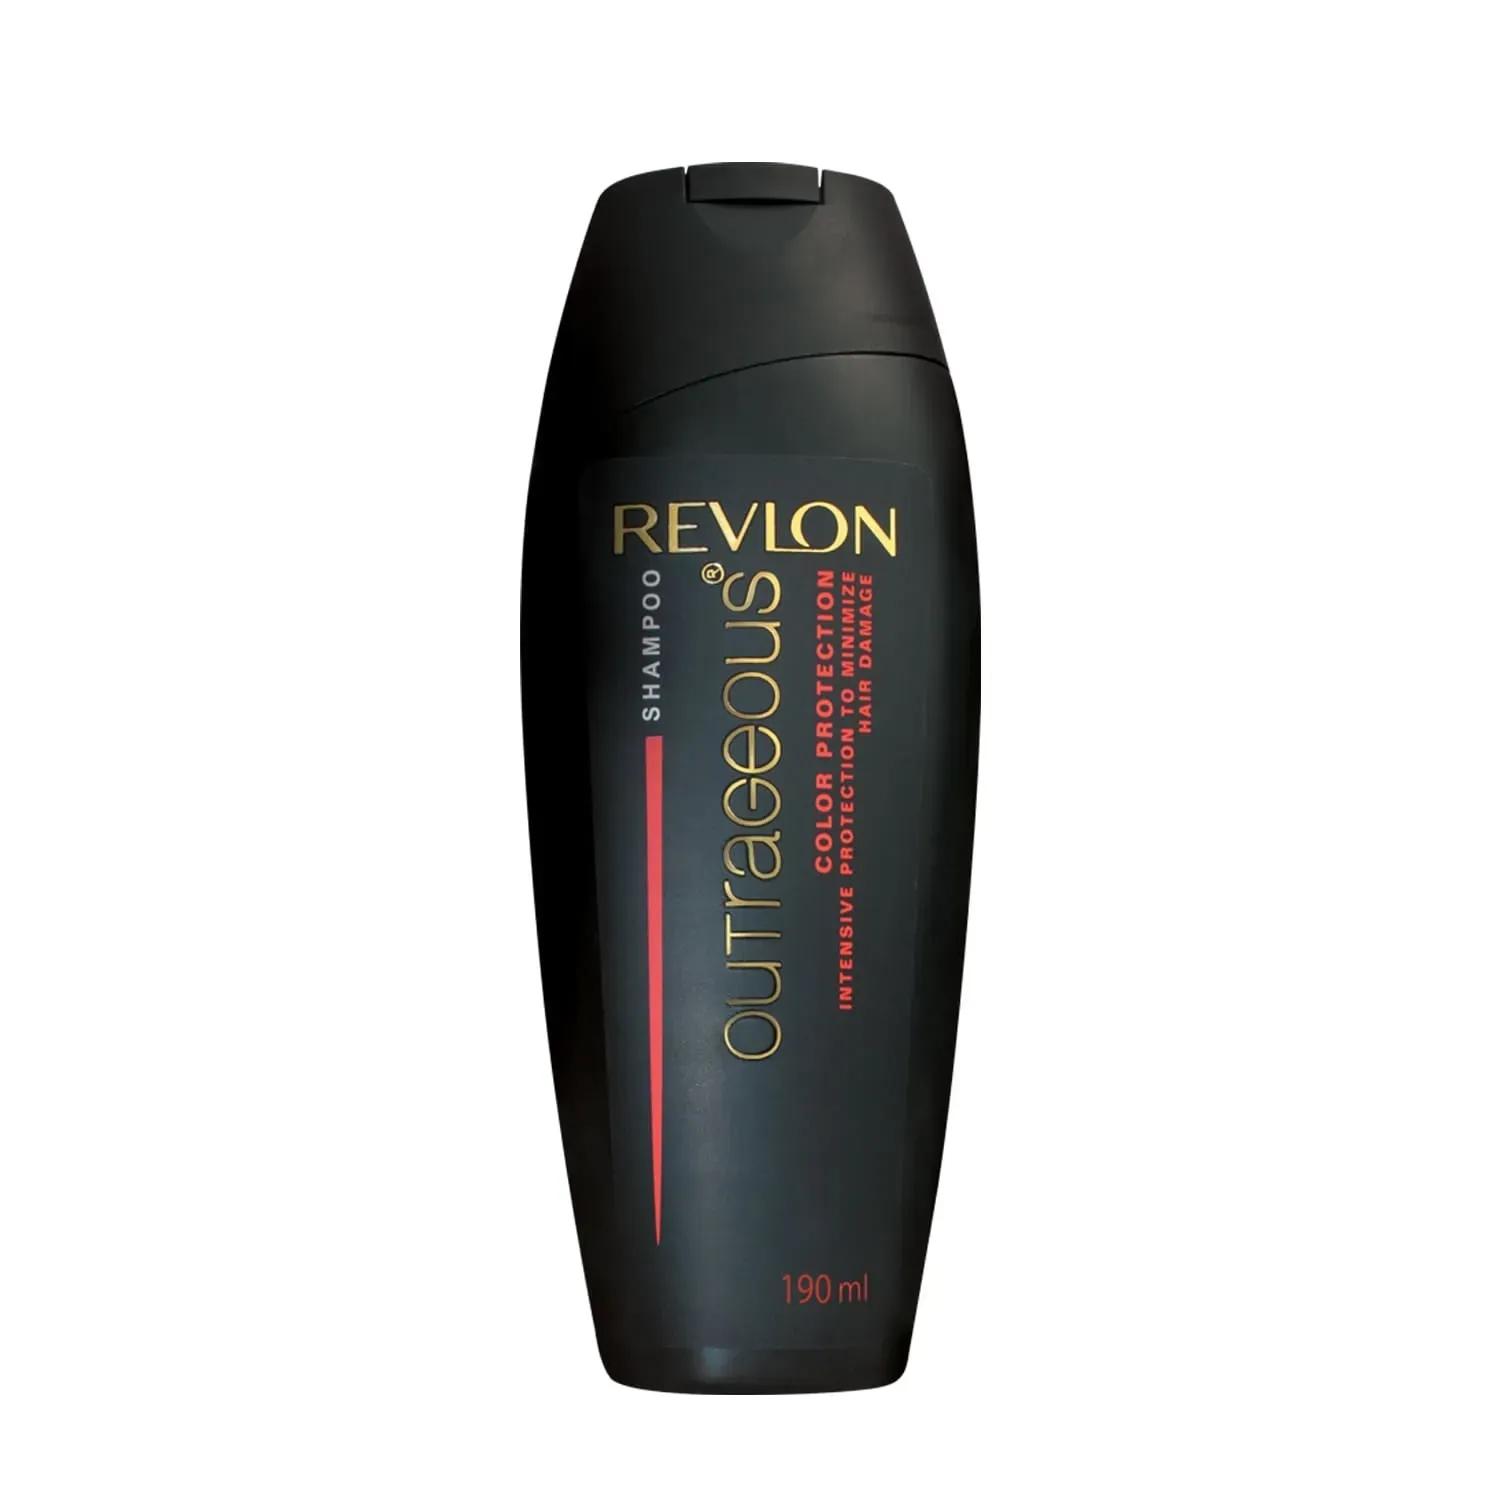 revlon outrageous color protection shampoo (190ml)